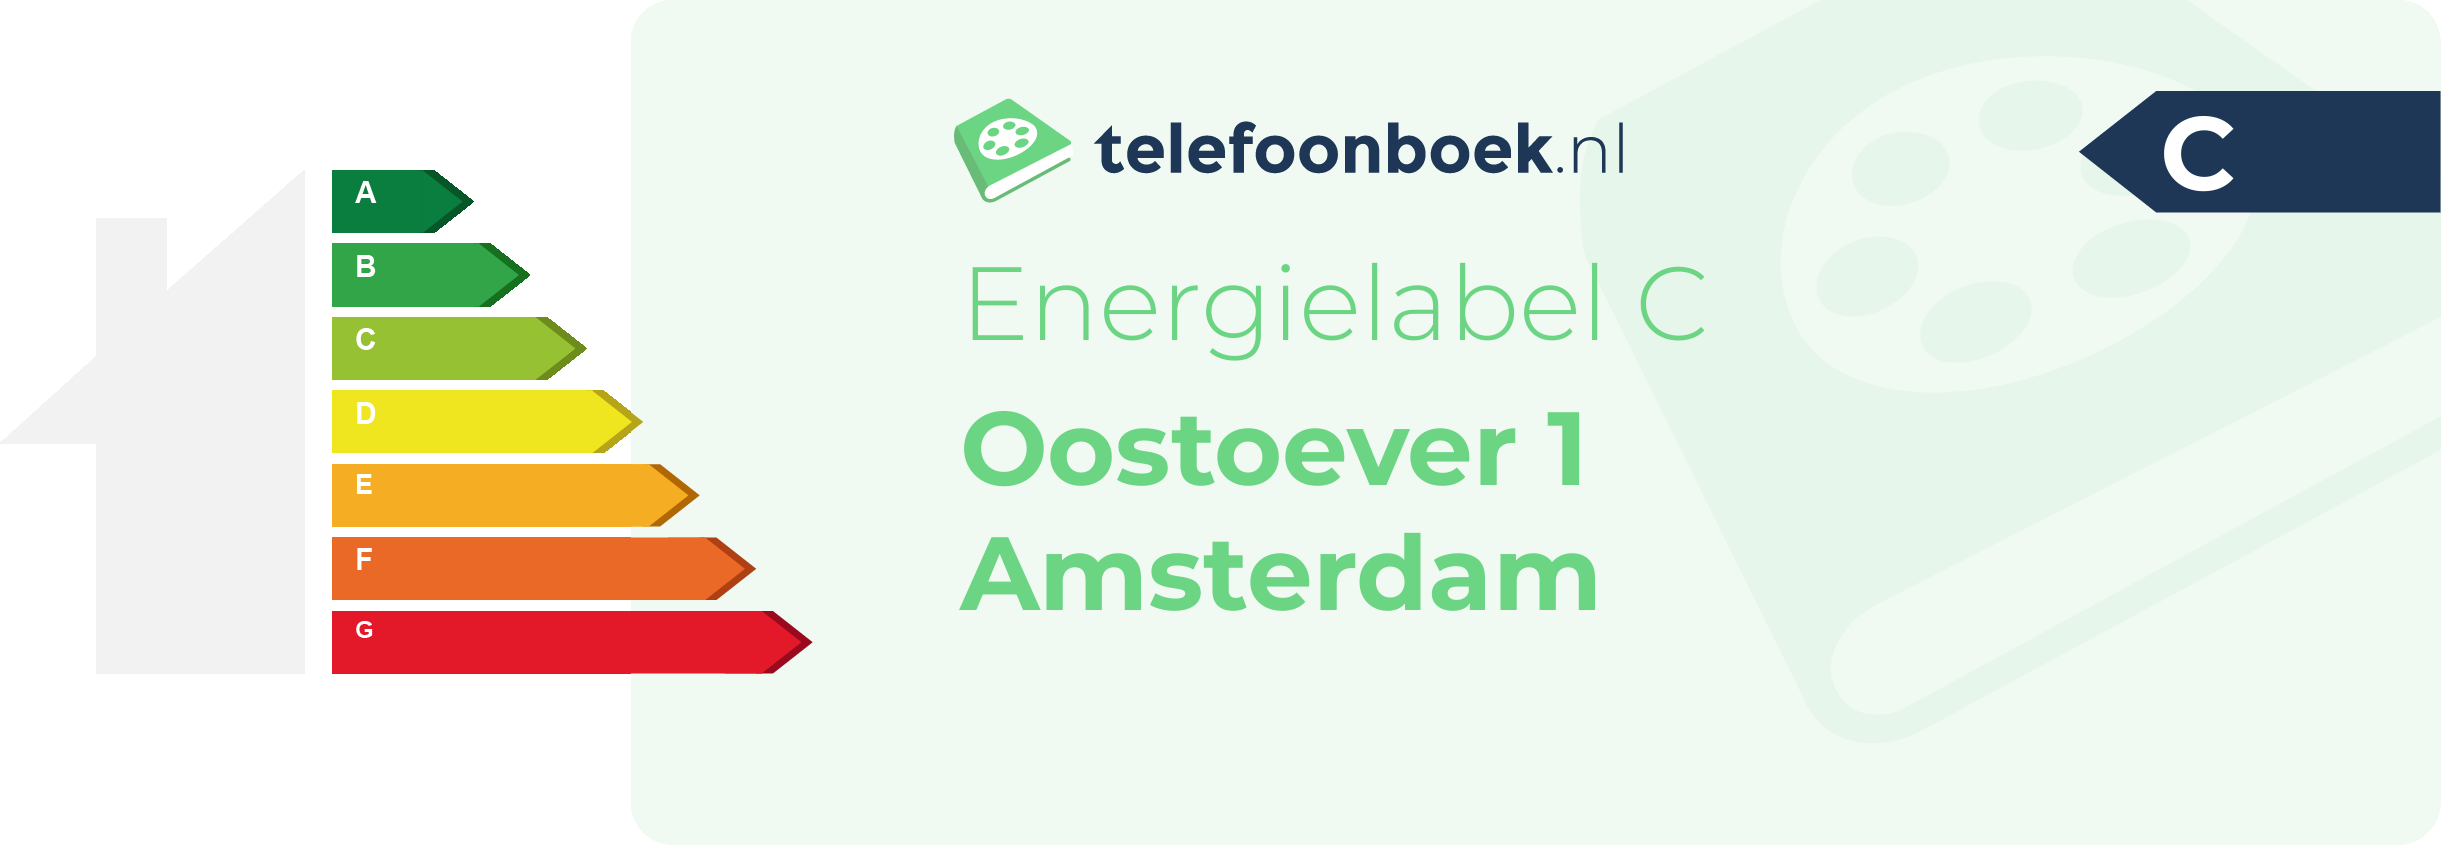 Energielabel Oostoever 1 Amsterdam